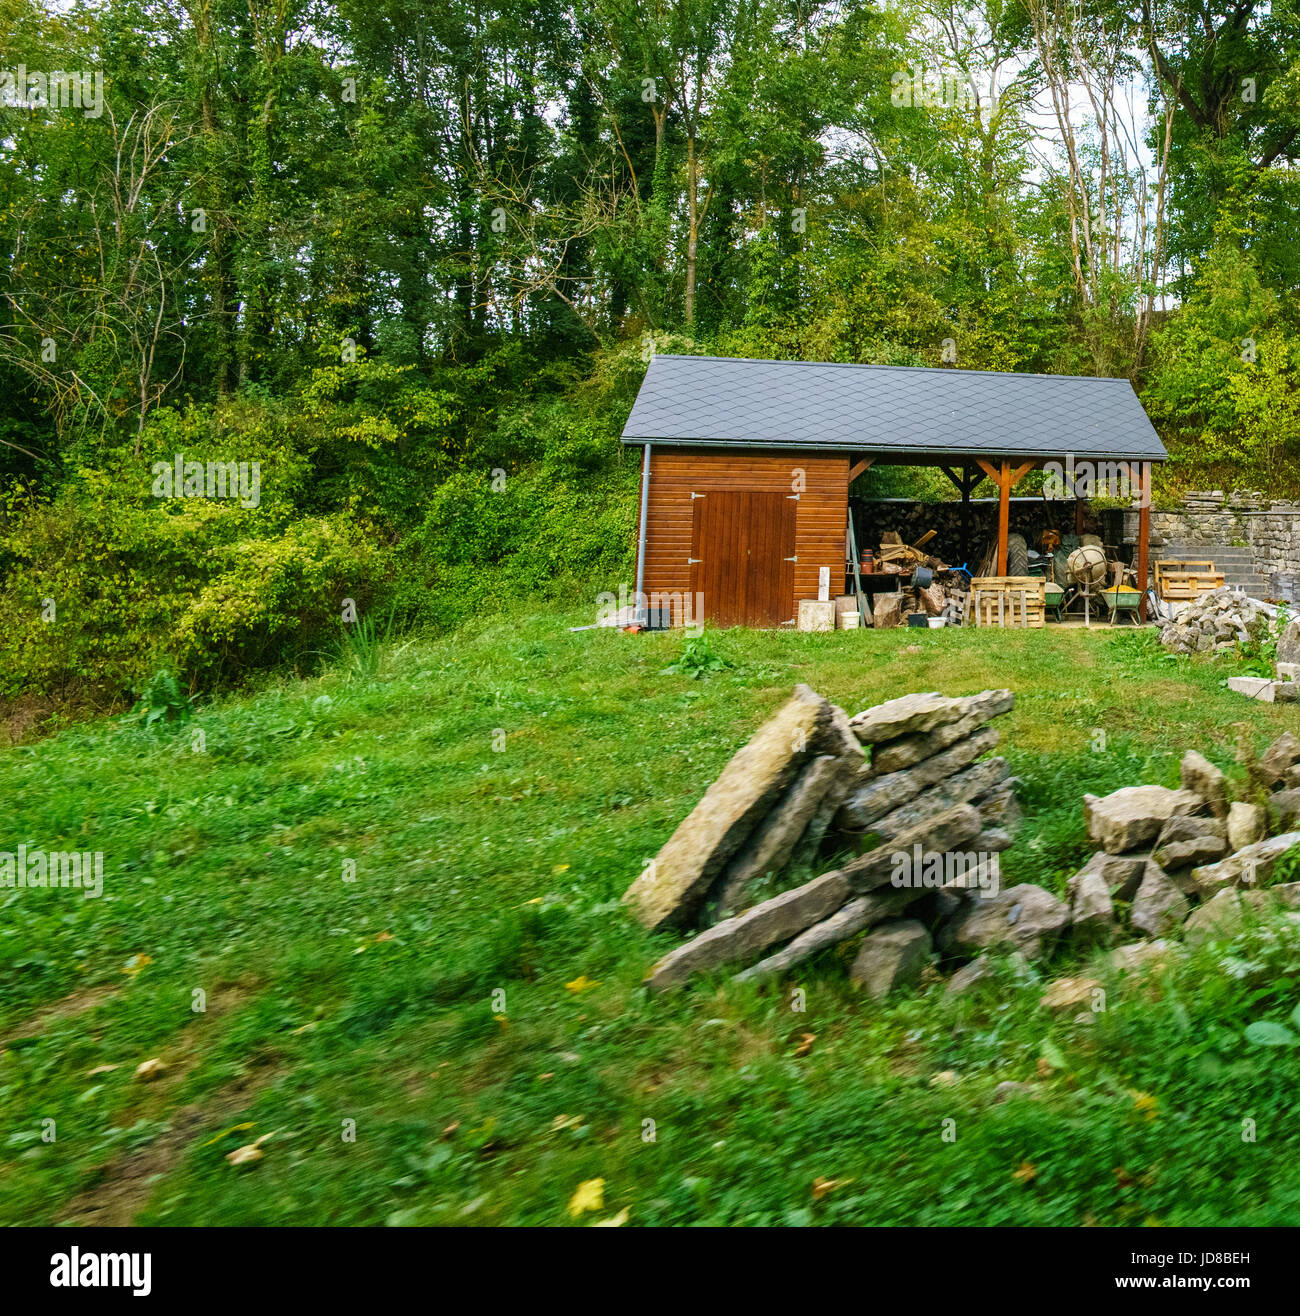 Petite cabane en bois avec des arbres derrière, des tas de rochers en premier plan. Belgique europe Banque D'Images